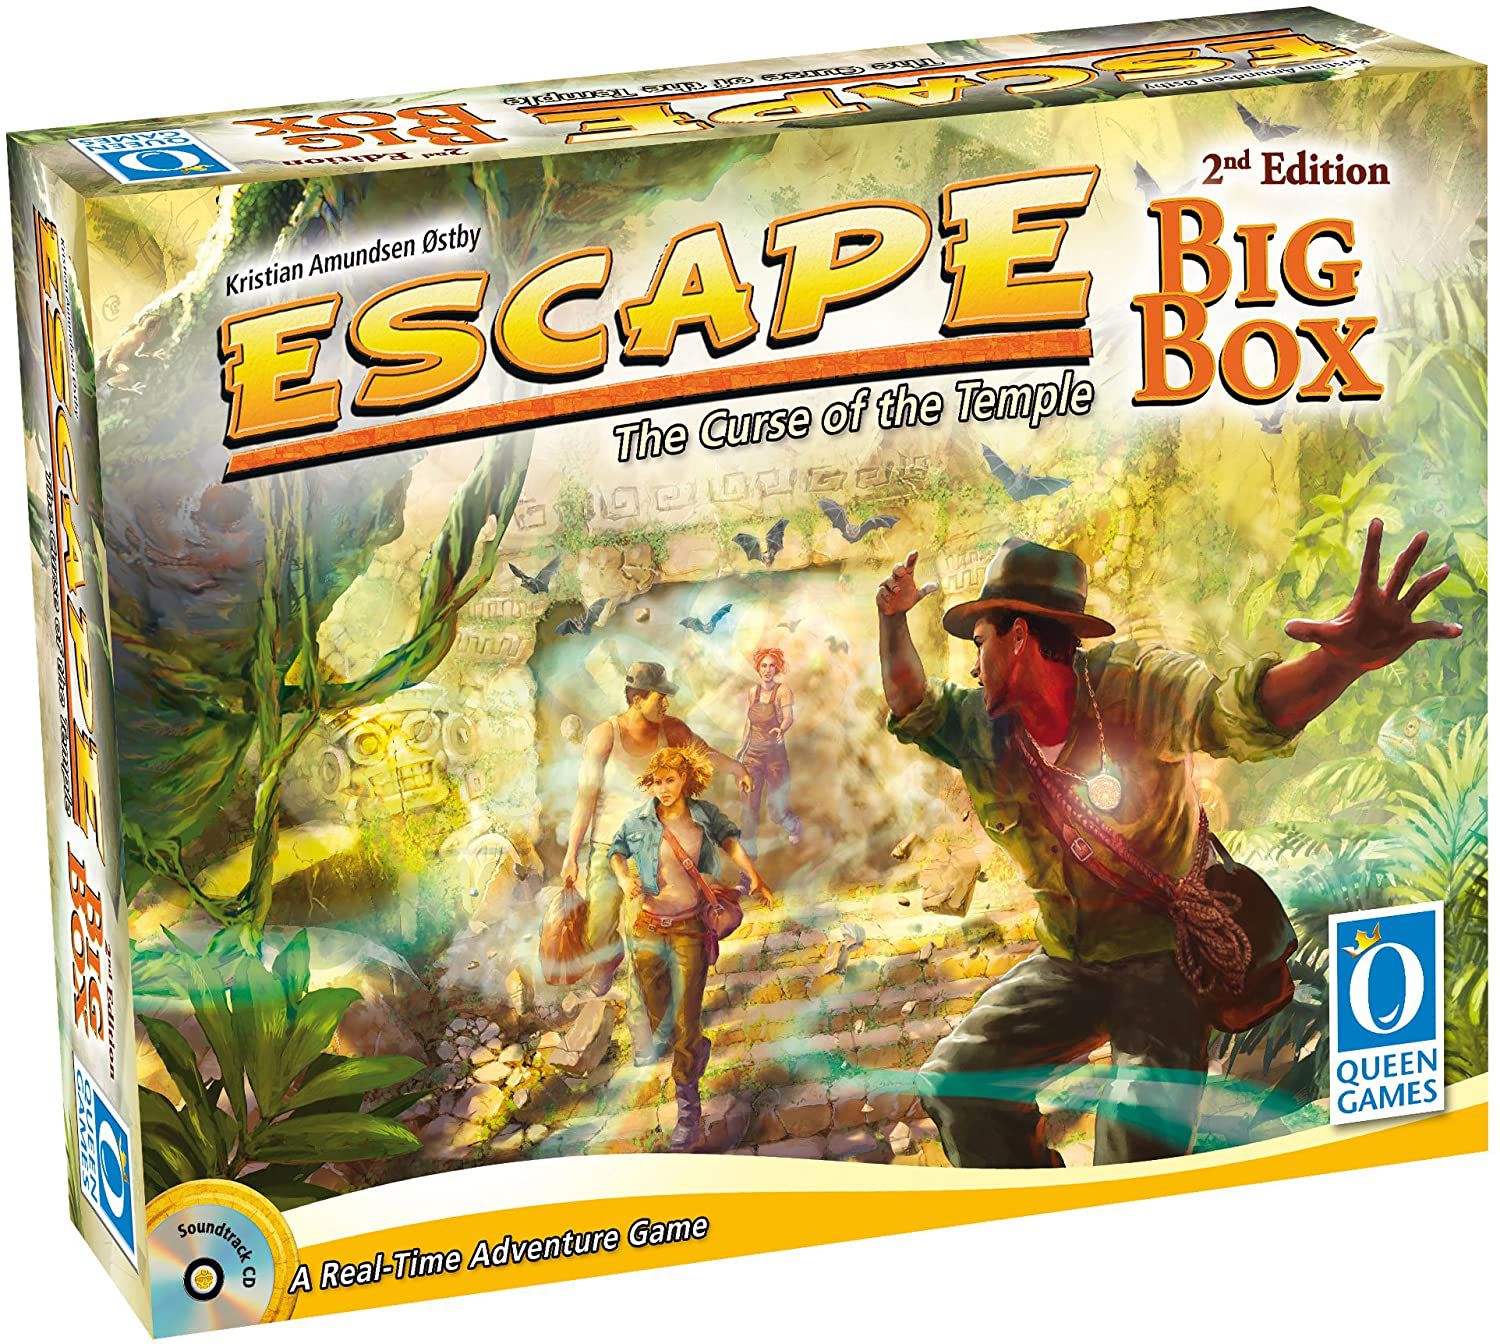 Vem Pra Mesa Jogos - Escape: The Curse of the Temple - Big Box é um jogo  cooperativo em que os jogadores - no papel de exploradores - devem escapar  (sim!) de